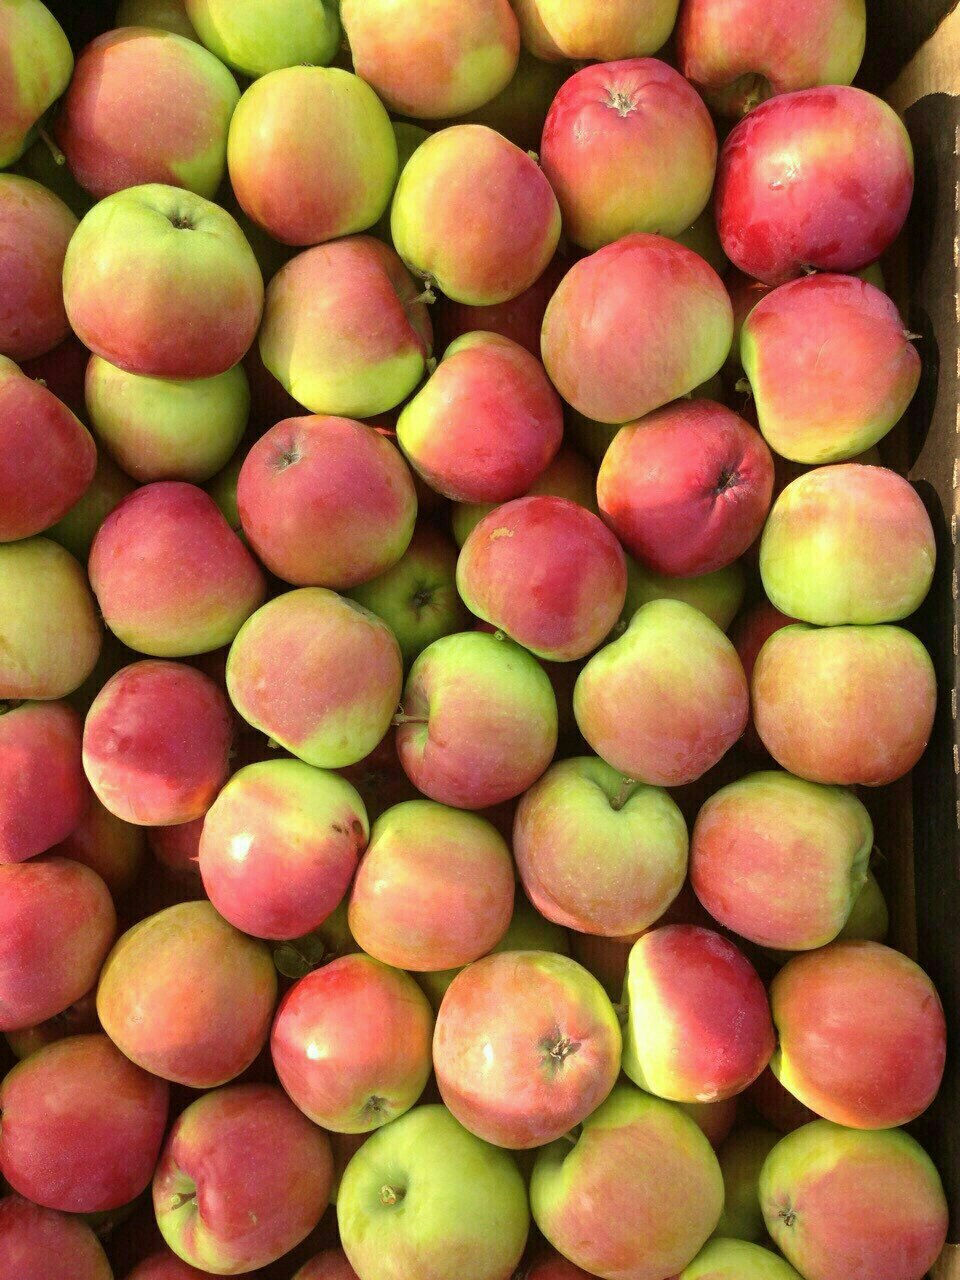 Купить яблоки от производителя. Лиголь яблоки сорт. Яблоко Калибр 65+. Айдаред. Яблоки Лигол 1кг.